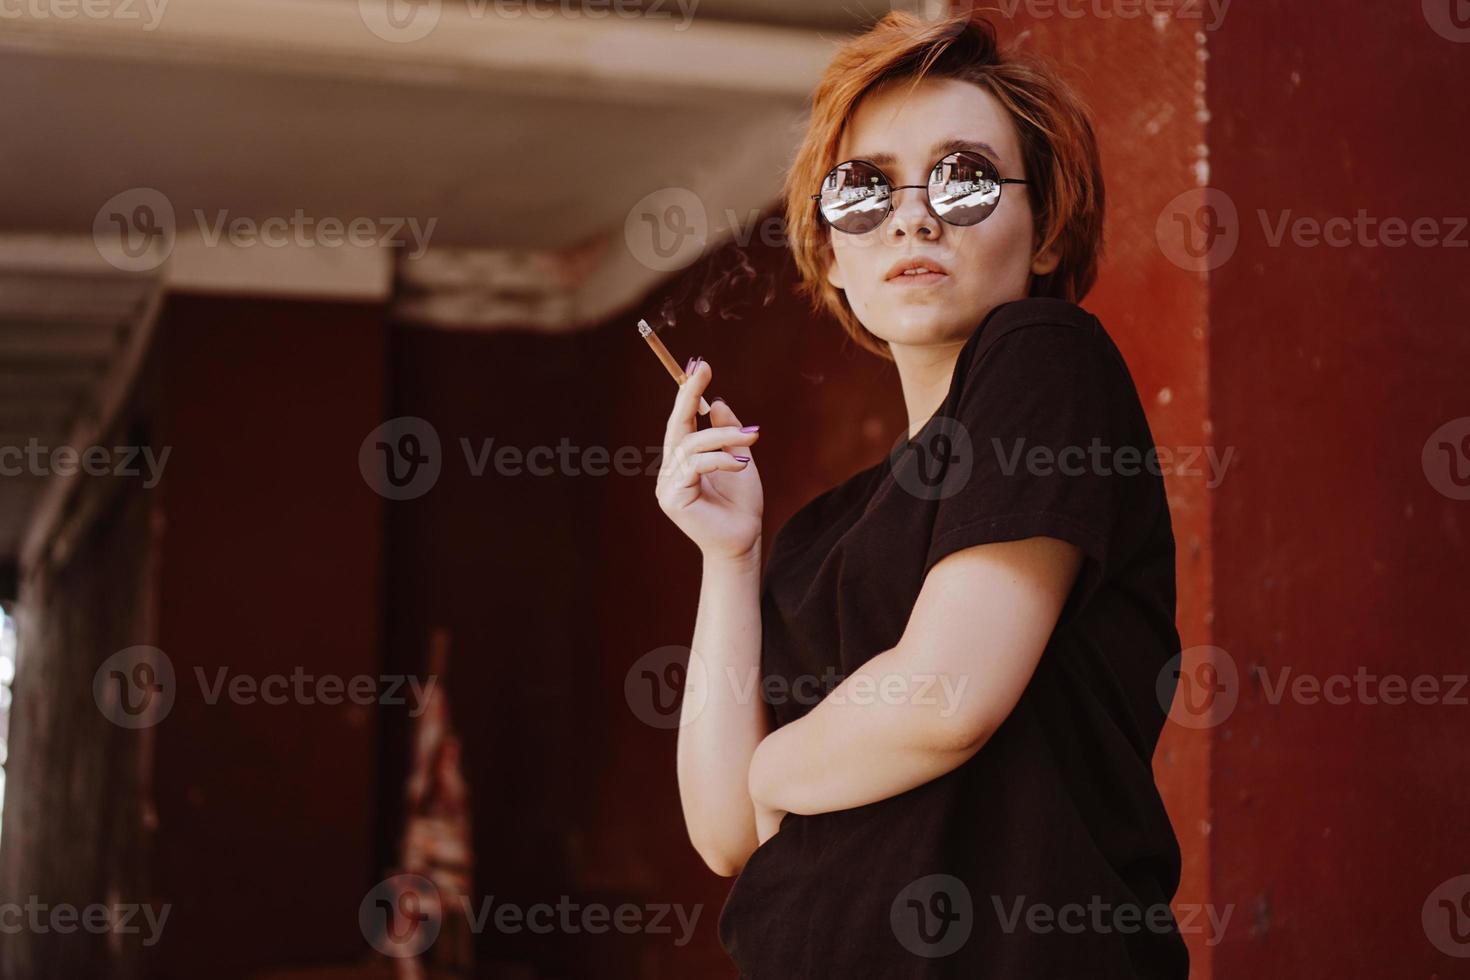 Fille aux cheveux roux courts et lunettes de soleil miroir fumant une cigarette photo